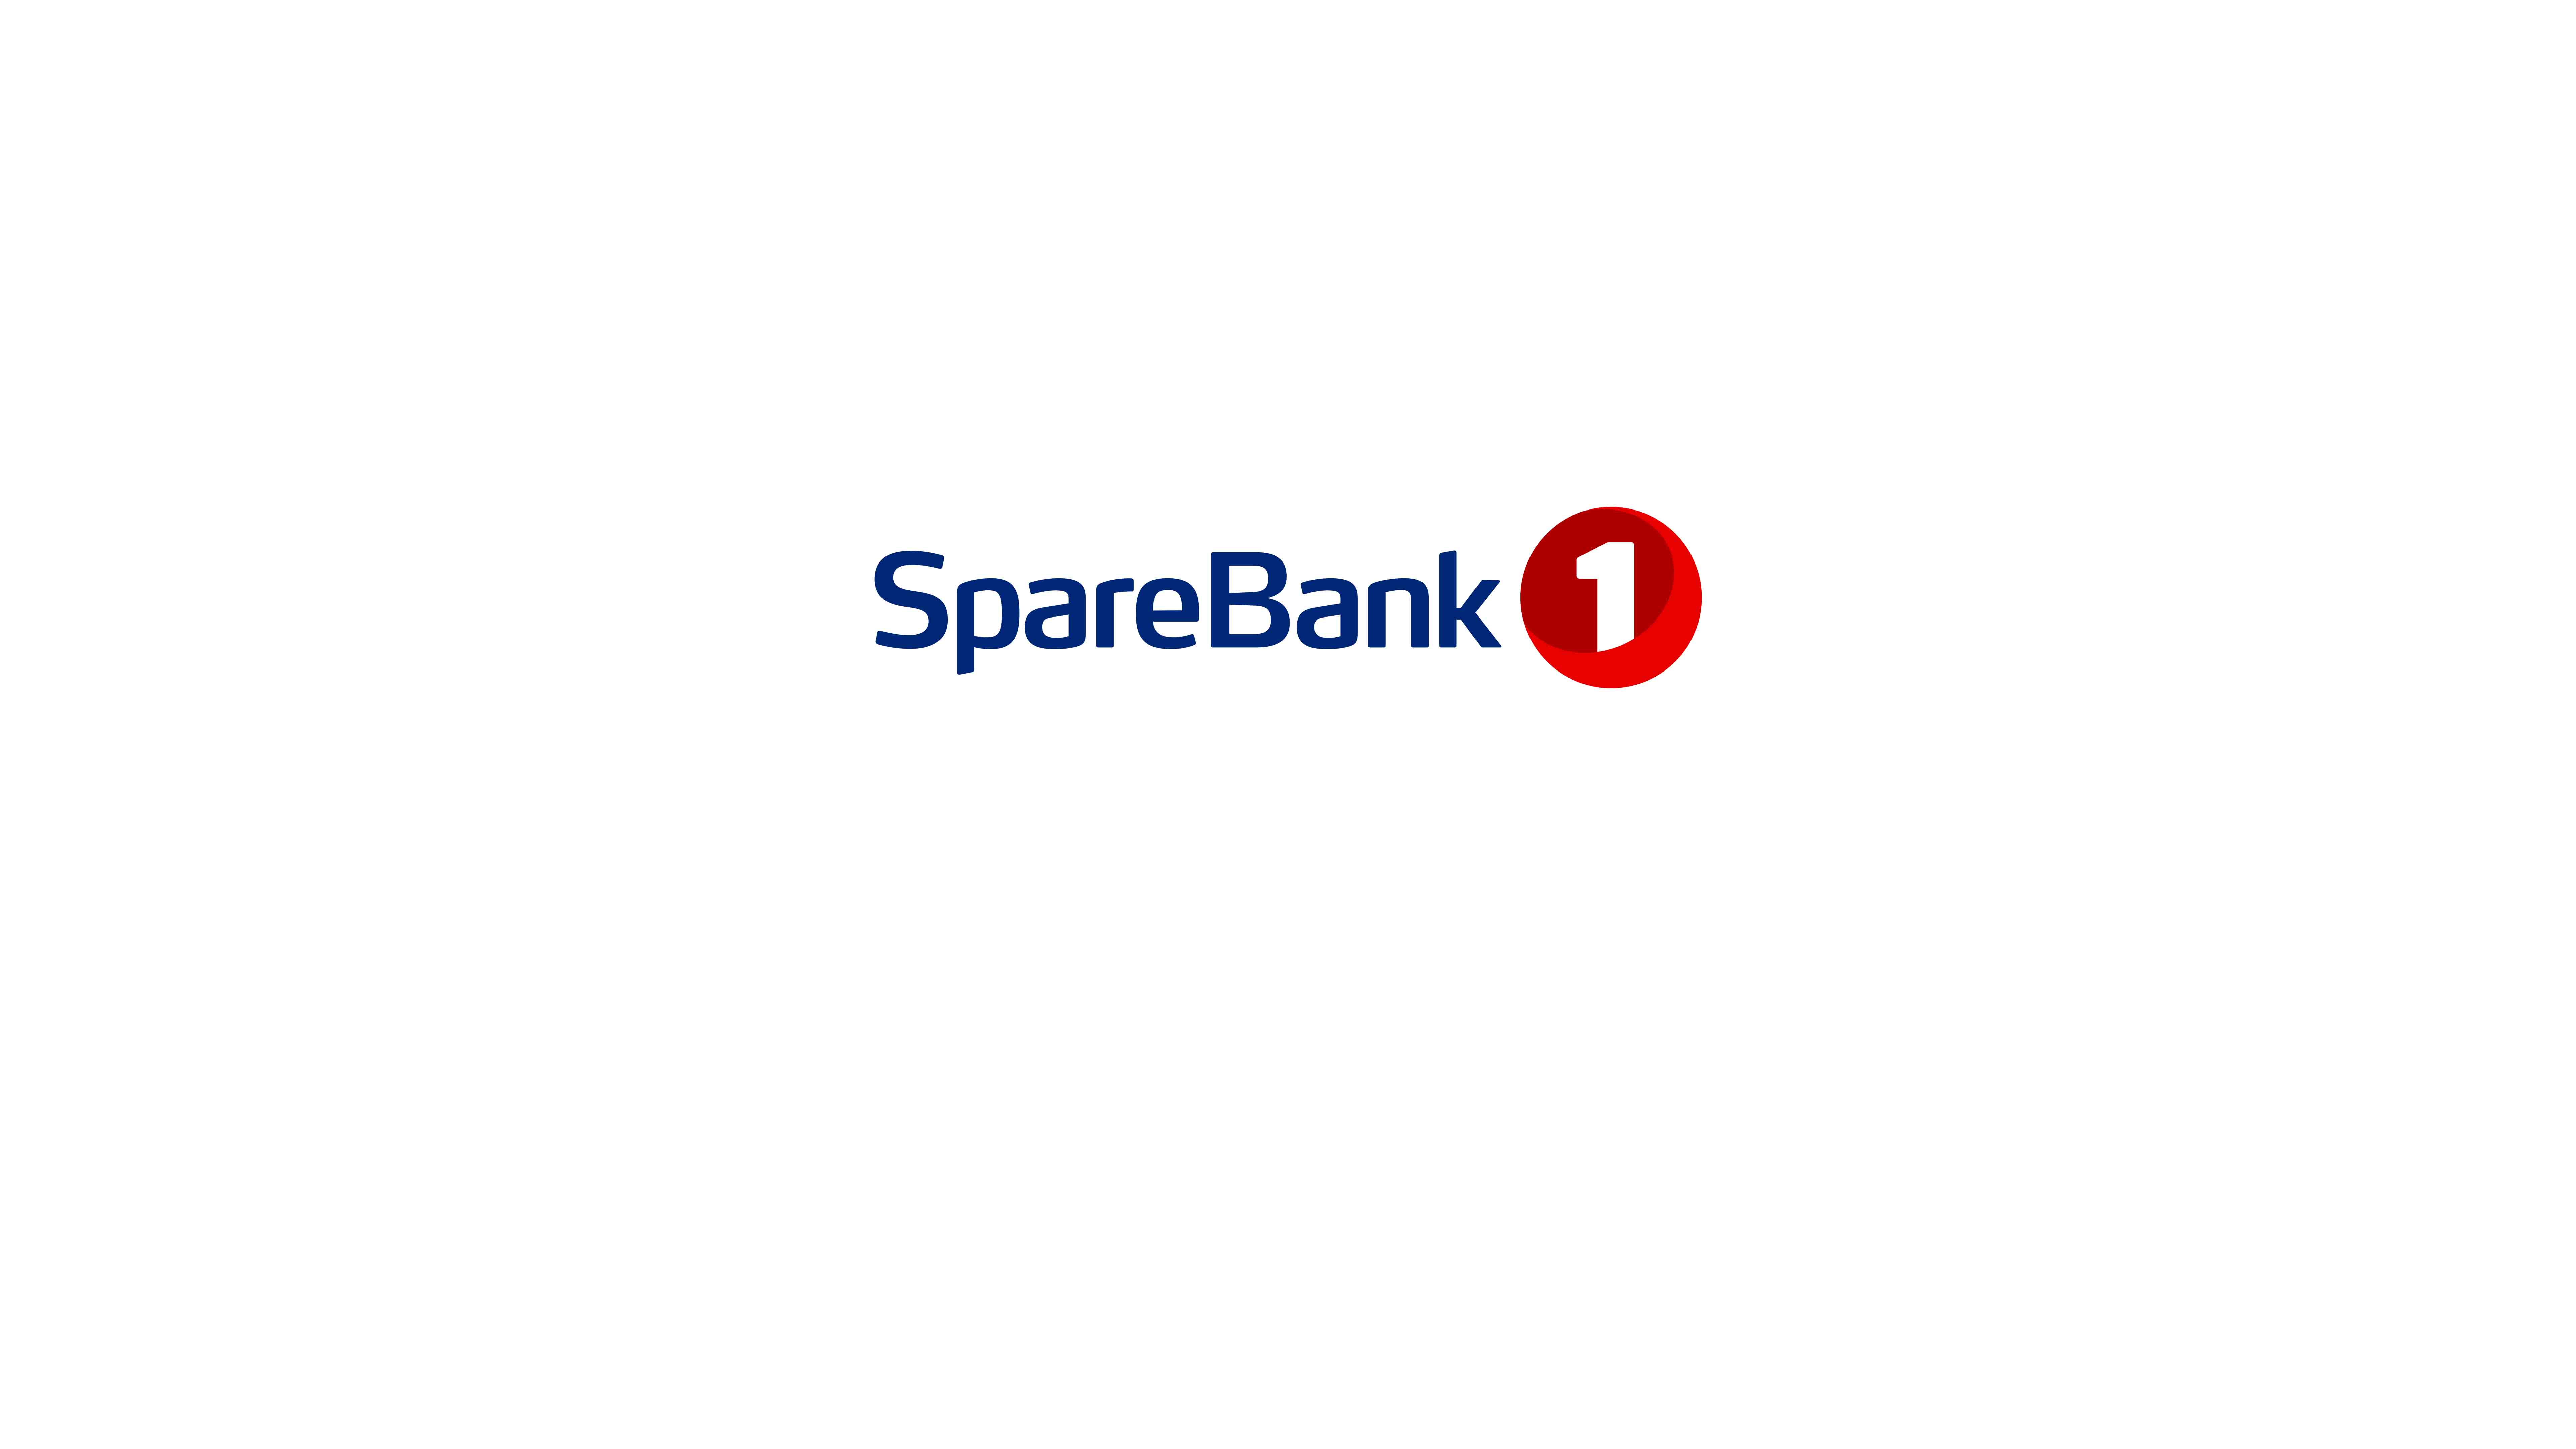 Kampanjen gjennomføres i samarbeid med SpareBank 1